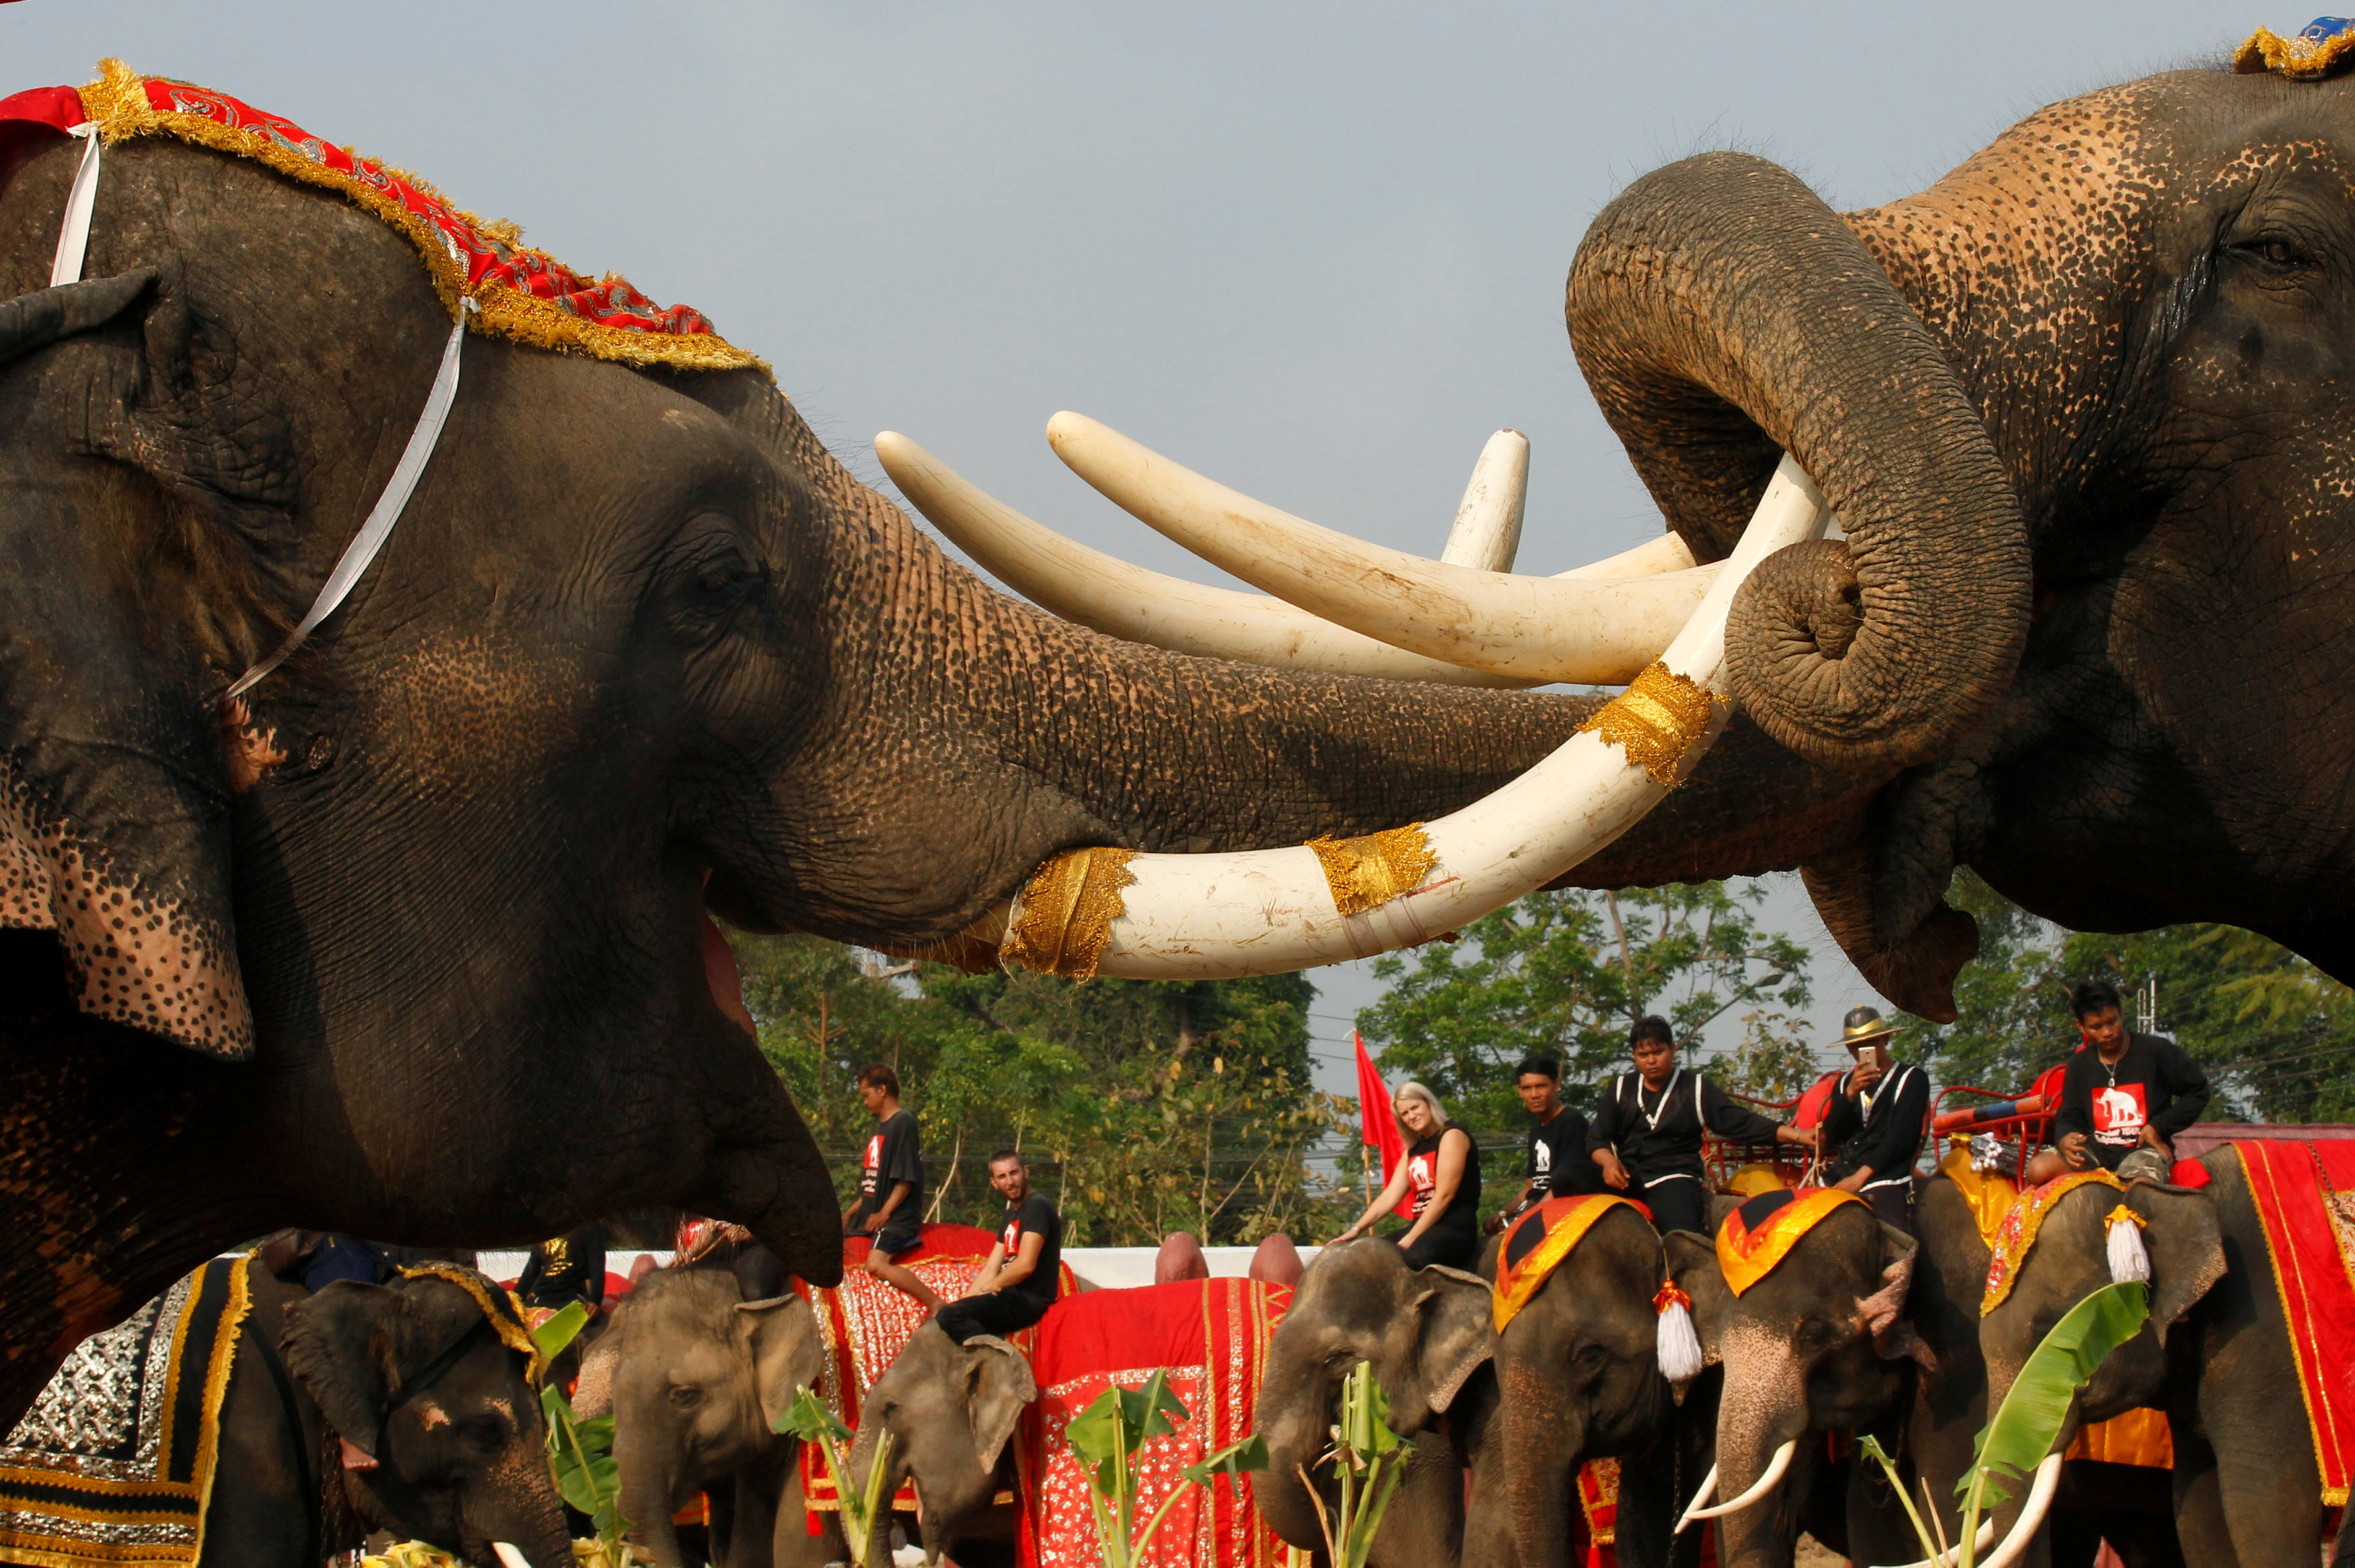 اشتباك الفيلة خلال احتفالات اليوم الوطنى فى تايلاند